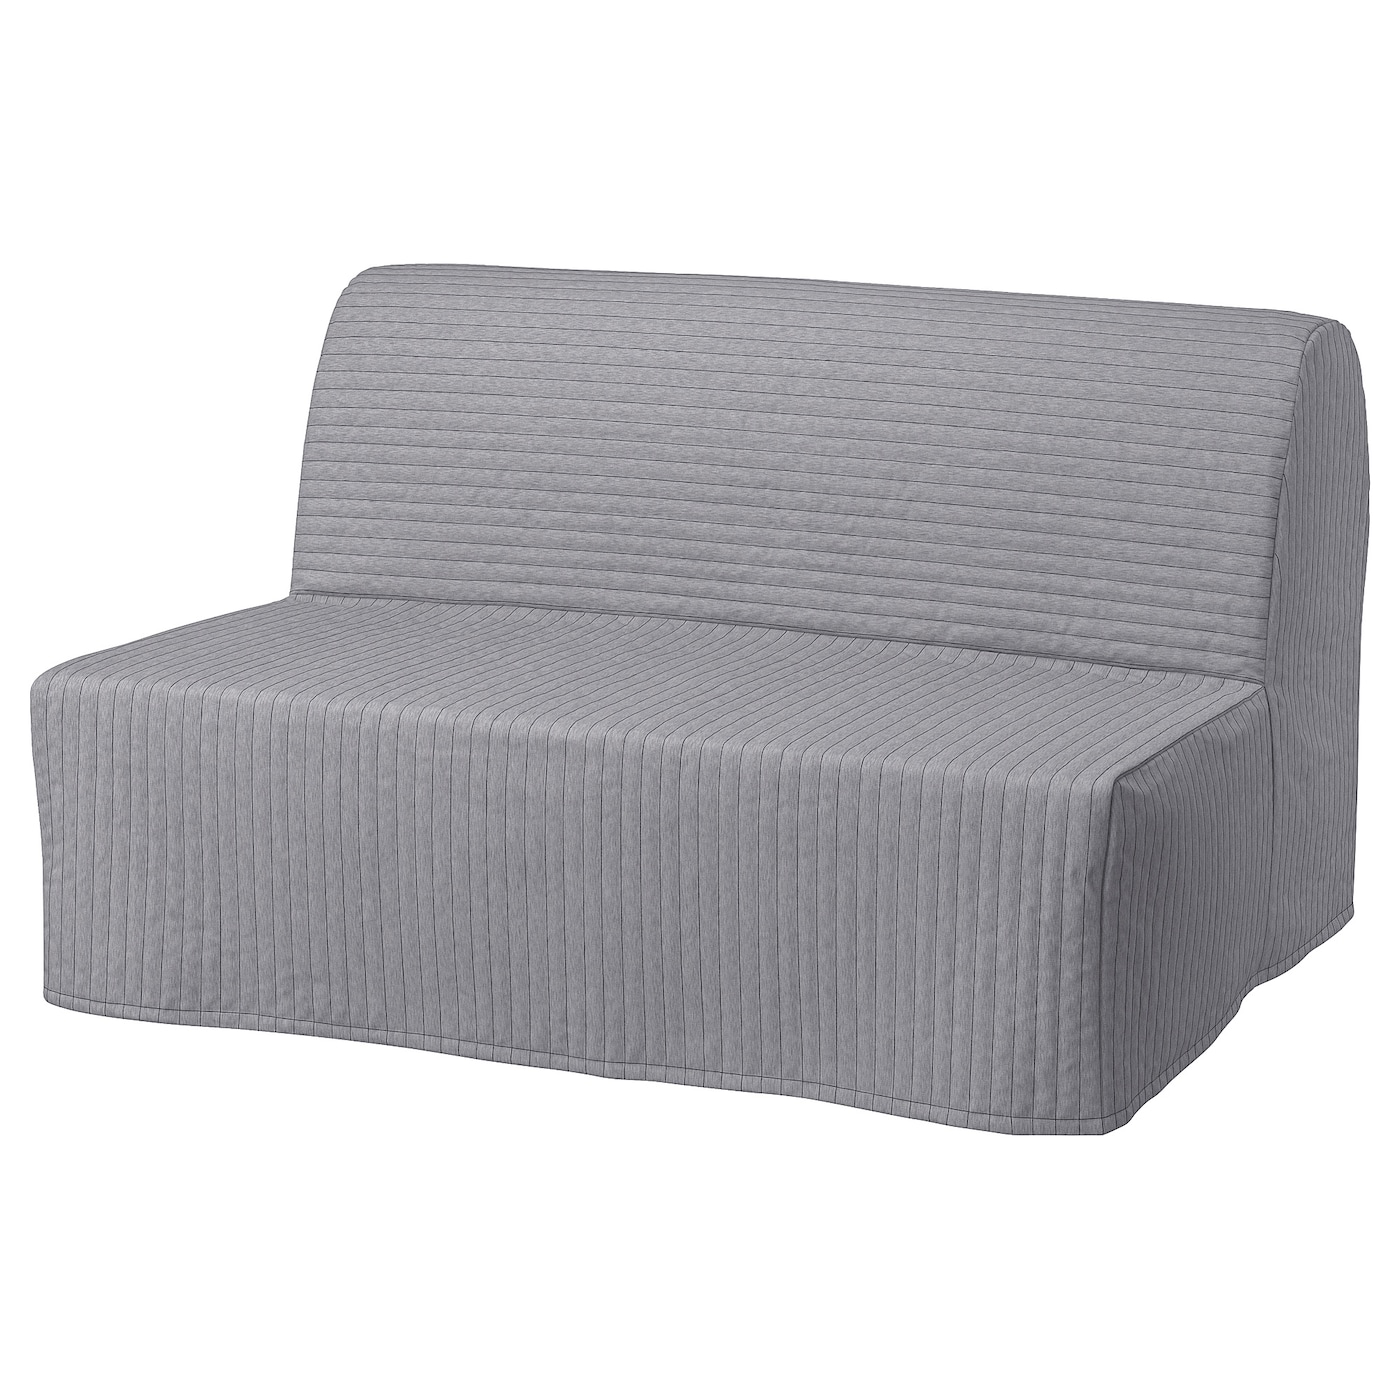 ЛИКСЕЛЕ ЛЁВОС 2 дивана-кровати с откидной спинкой, Книса светло-серый LYCKSELE LÖVÅS IKEA